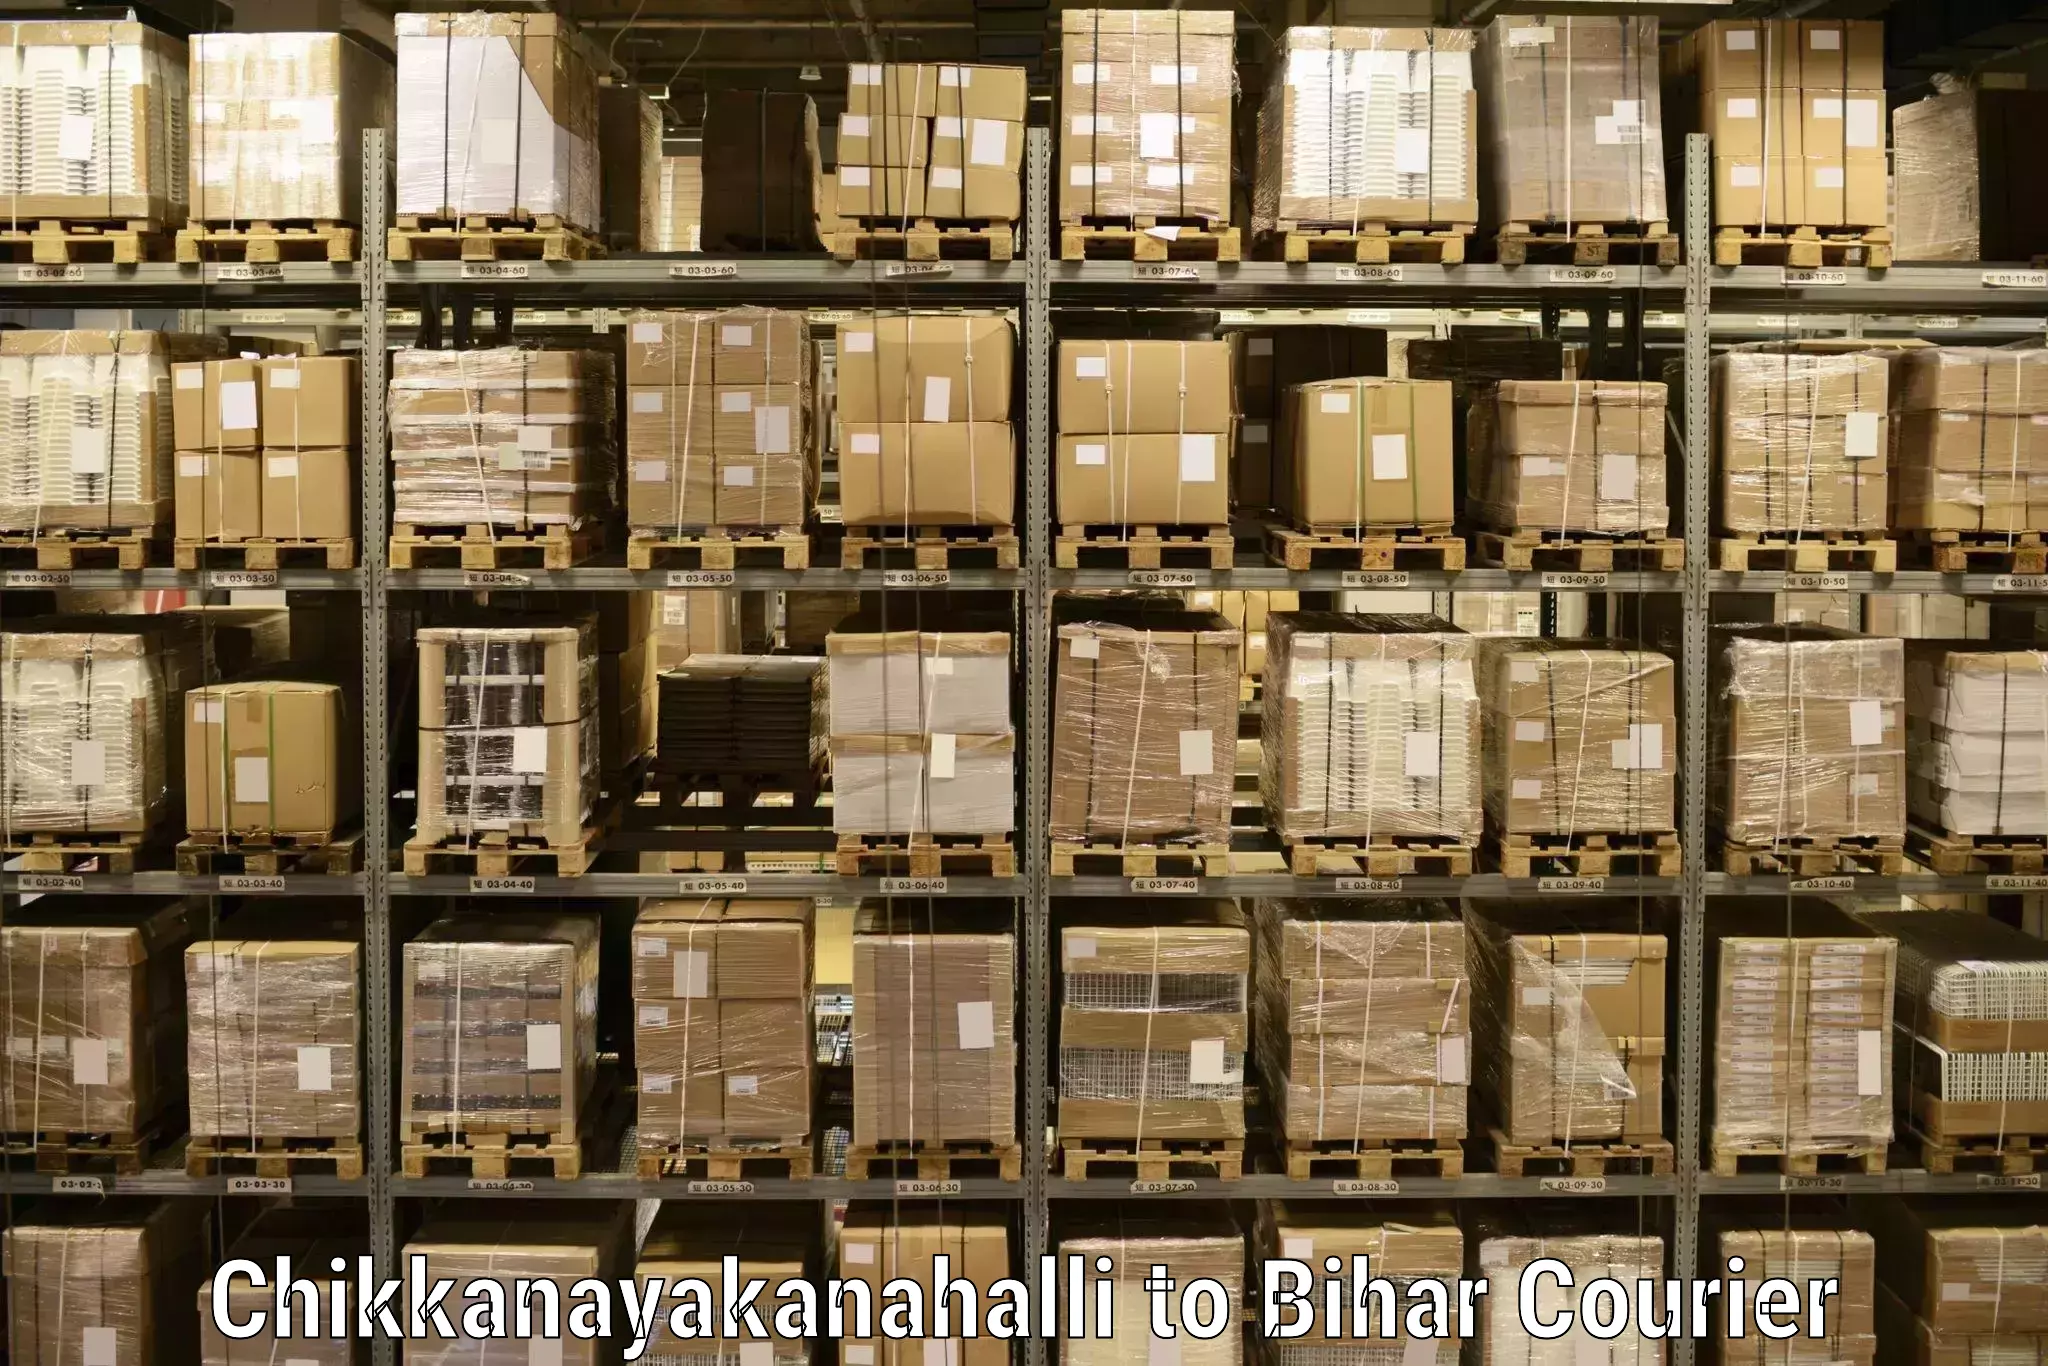 Holiday shipping services Chikkanayakanahalli to Khizarsarai